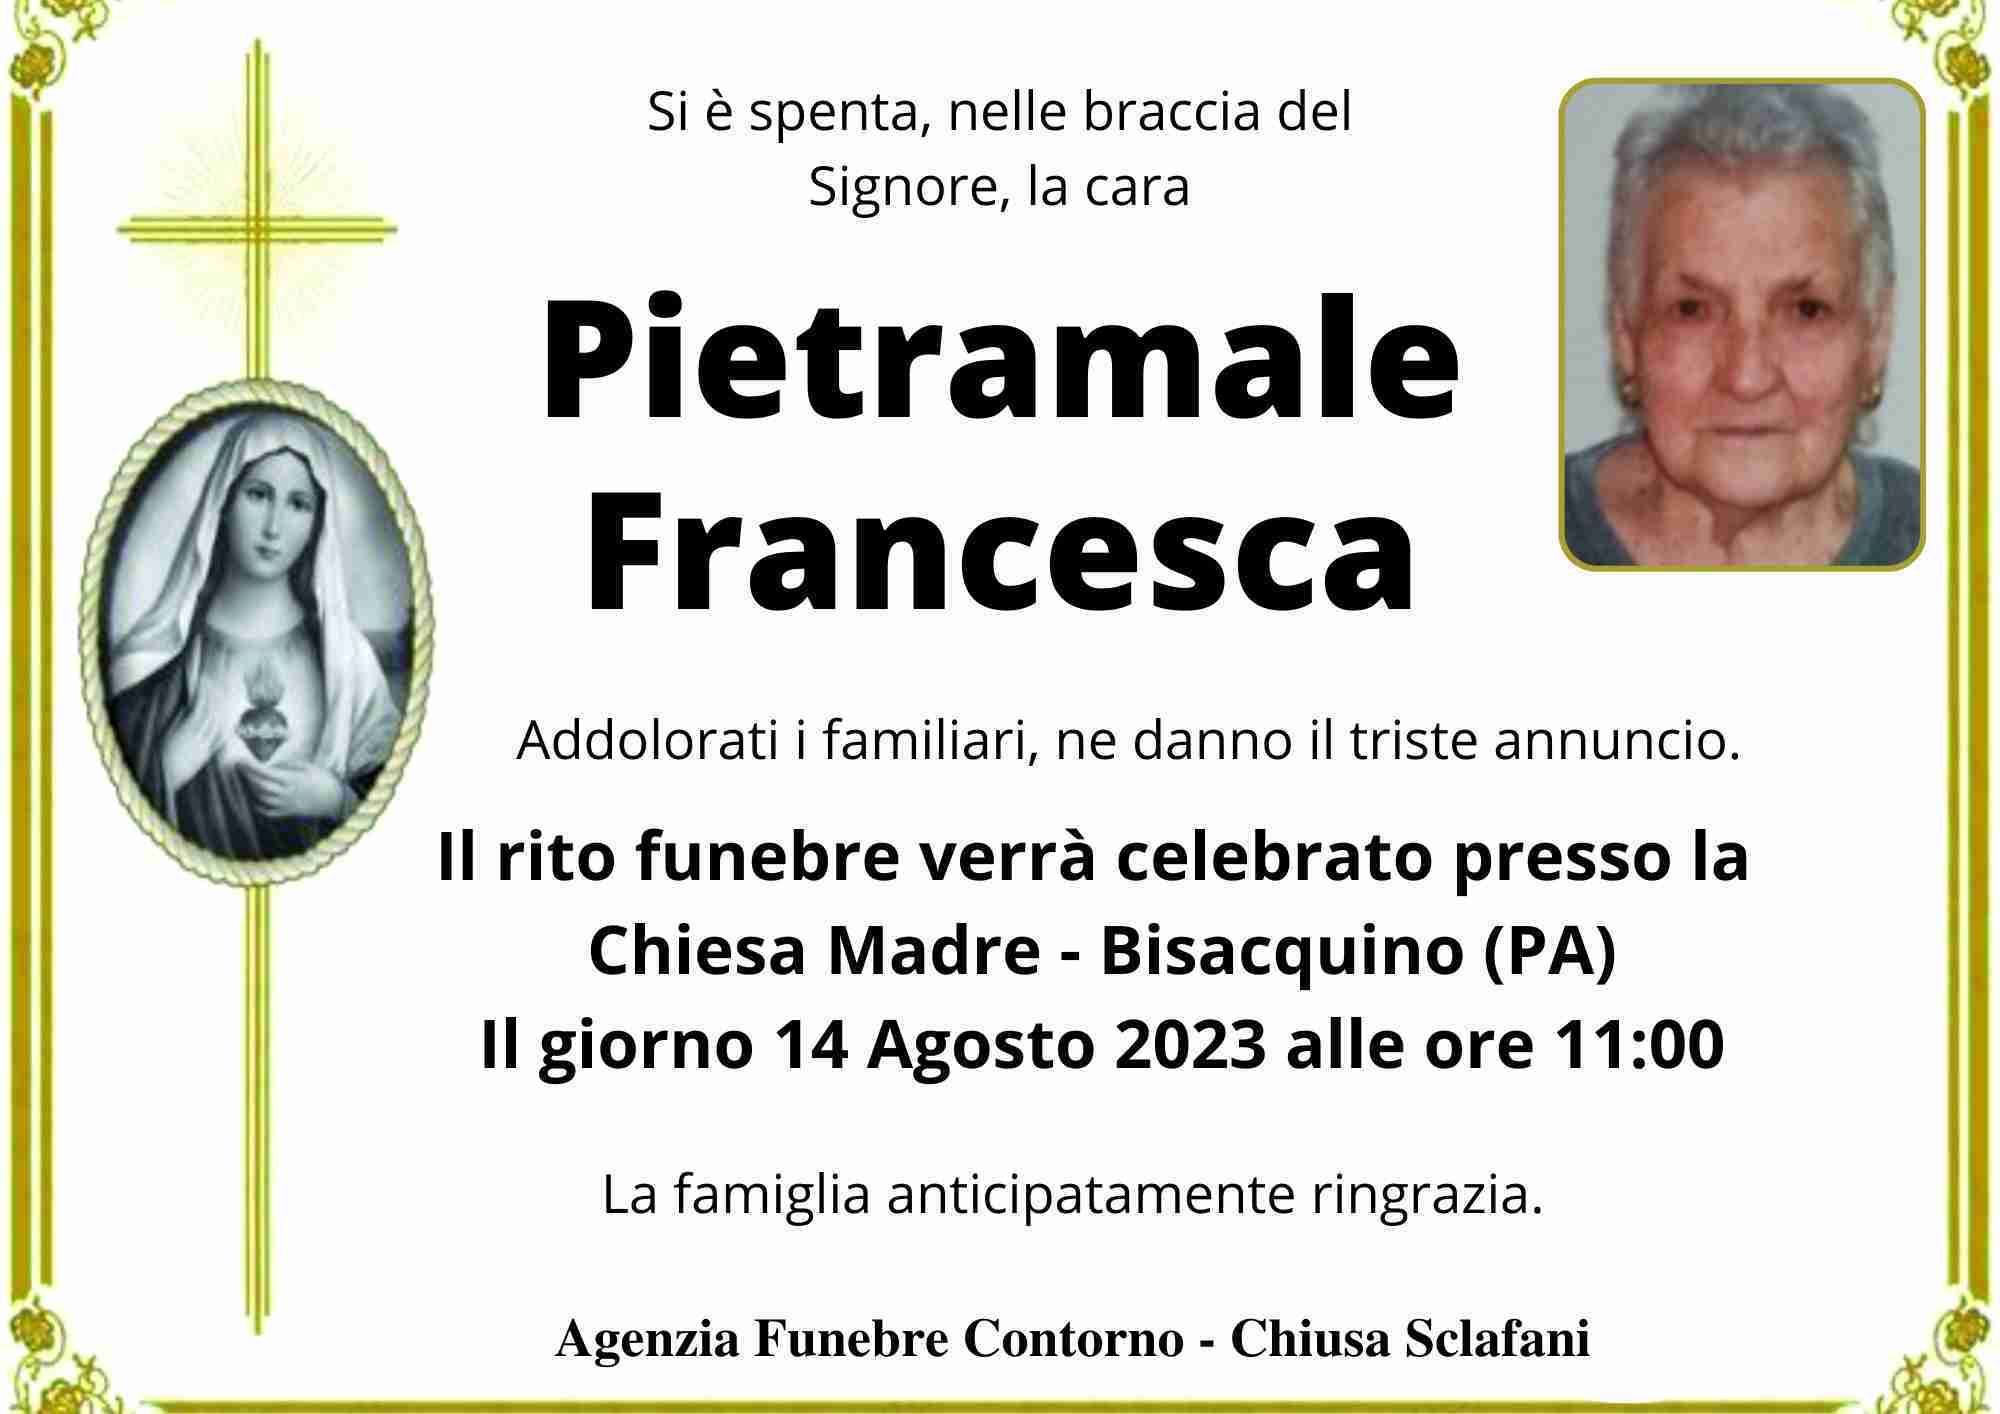 Francesca Pietramale